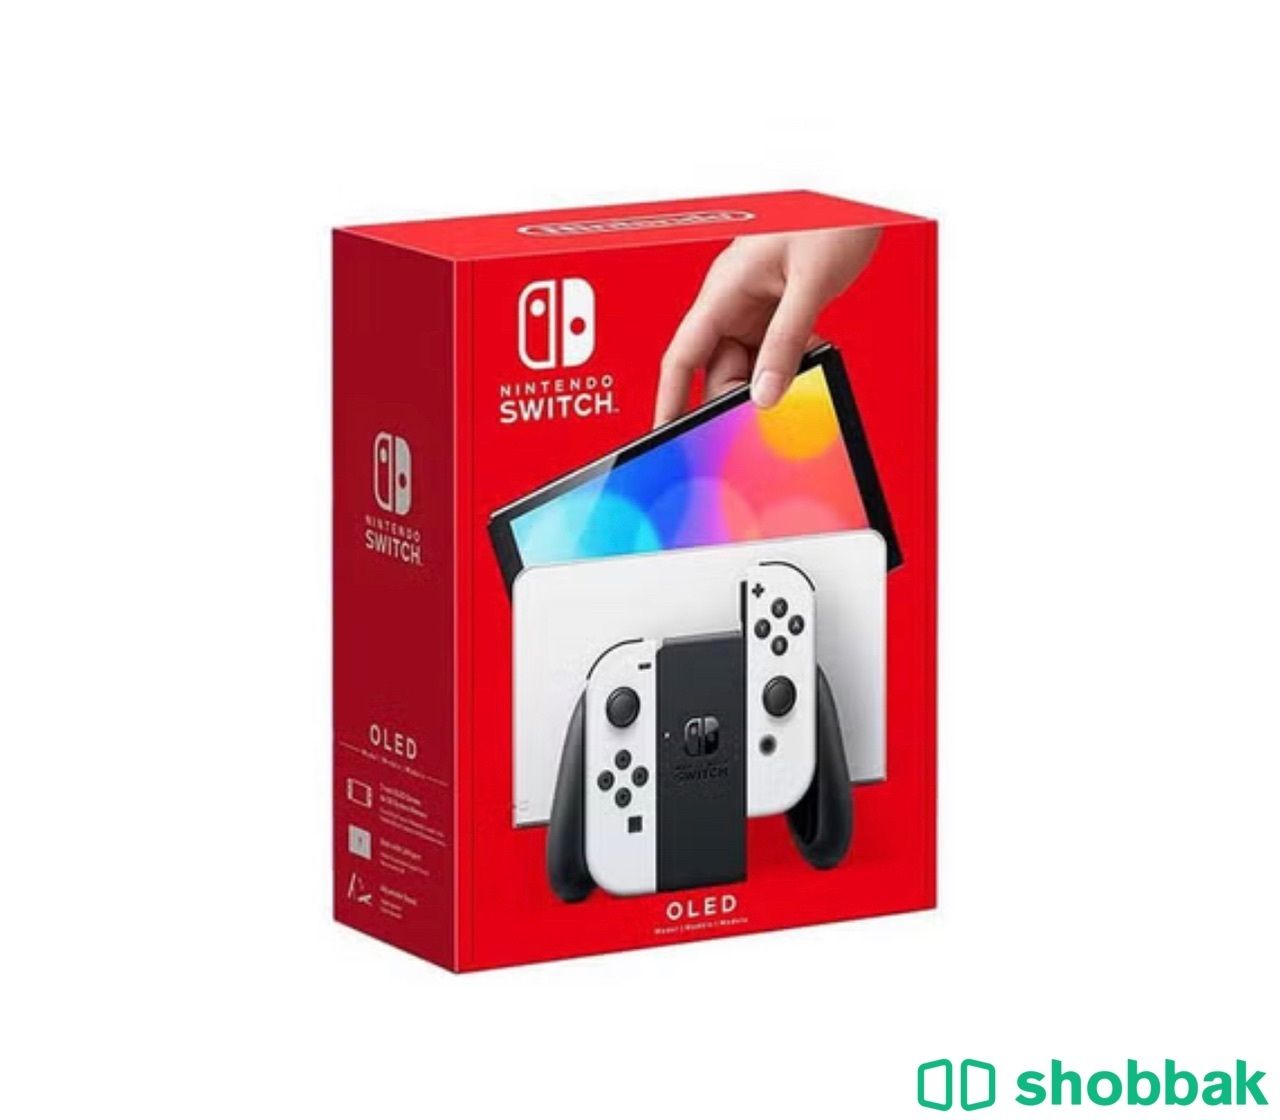  Nintendo switch OLED Shobbak Saudi Arabia